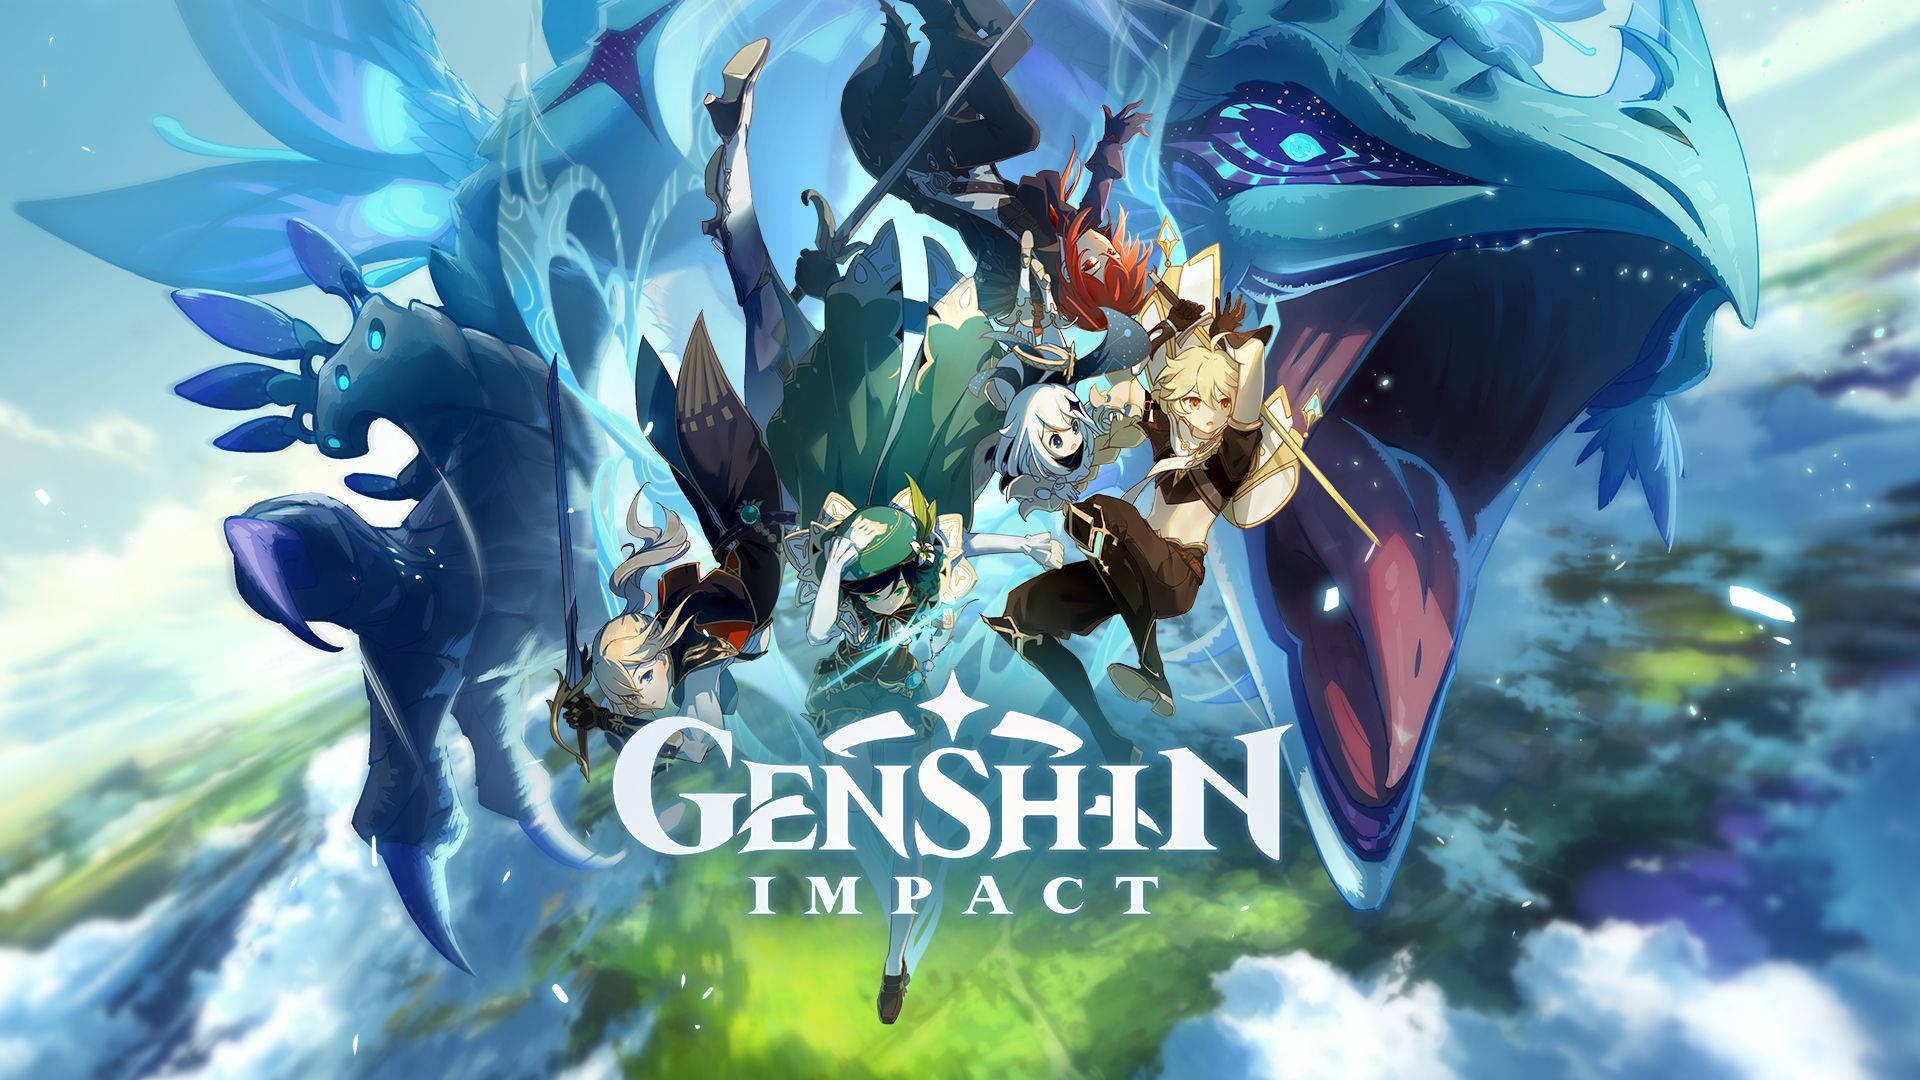 Genshin Impact, Wallpaper: Mang sự phong phú và đa dạng của thế giới Genshin Impact về màn hình máy tính của bạn với những bức ảnh nền đẹp mắt từ trò chơi. Tận hưởng những khung cảnh đẹp và nền tảng thần thoại của Genshin Impact mỗi khi làm việc trên máy tính. Hãy khám phá và tận hưởng những bức ảnh nền độc đáo này ngay.